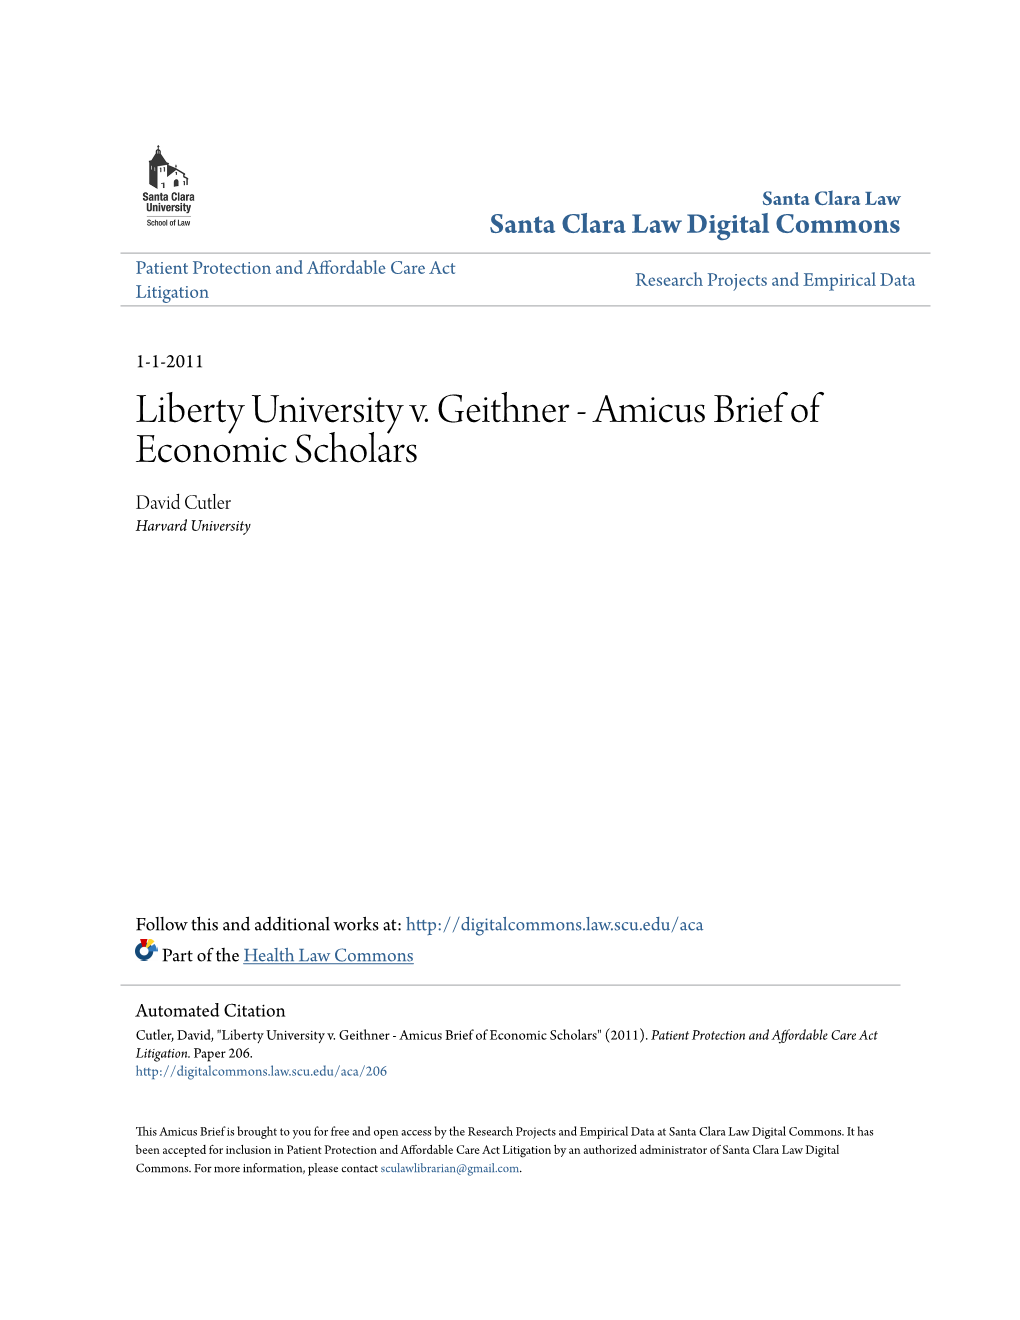 Amicus Brief of Economic Scholars David Cutler Harvard University